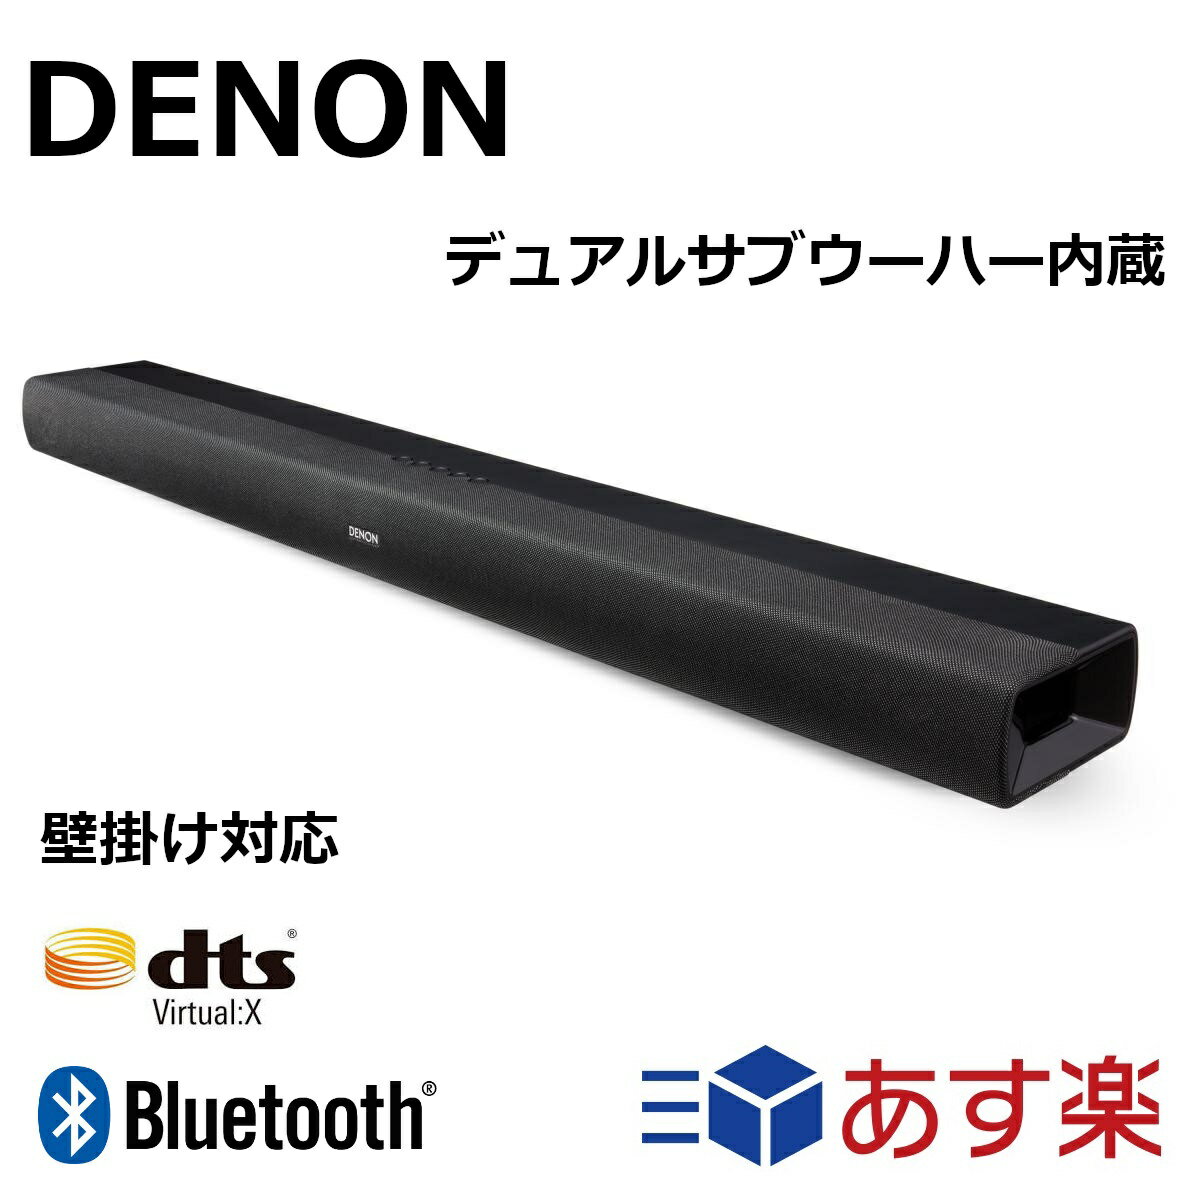 デノン Denon サブウーハー内蔵 サウンドバー DHT-C200 DTS Virtual X B ...